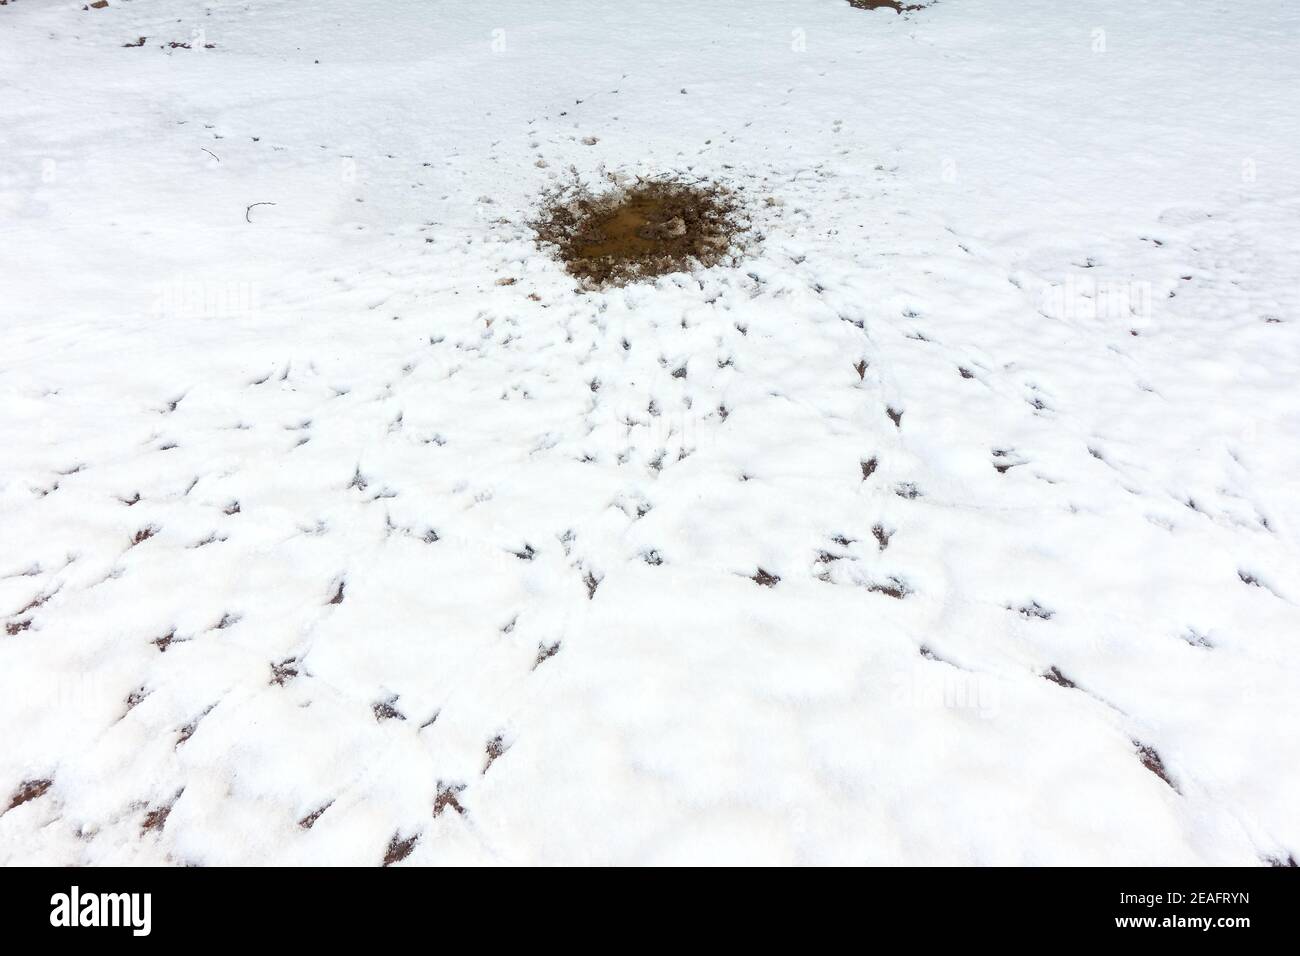 Señales de aves alimentándose y bebiendo alrededor de un parche derretido de nieve como lo demuestran las huellas y huellas en el condiciones invernales Foto de stock